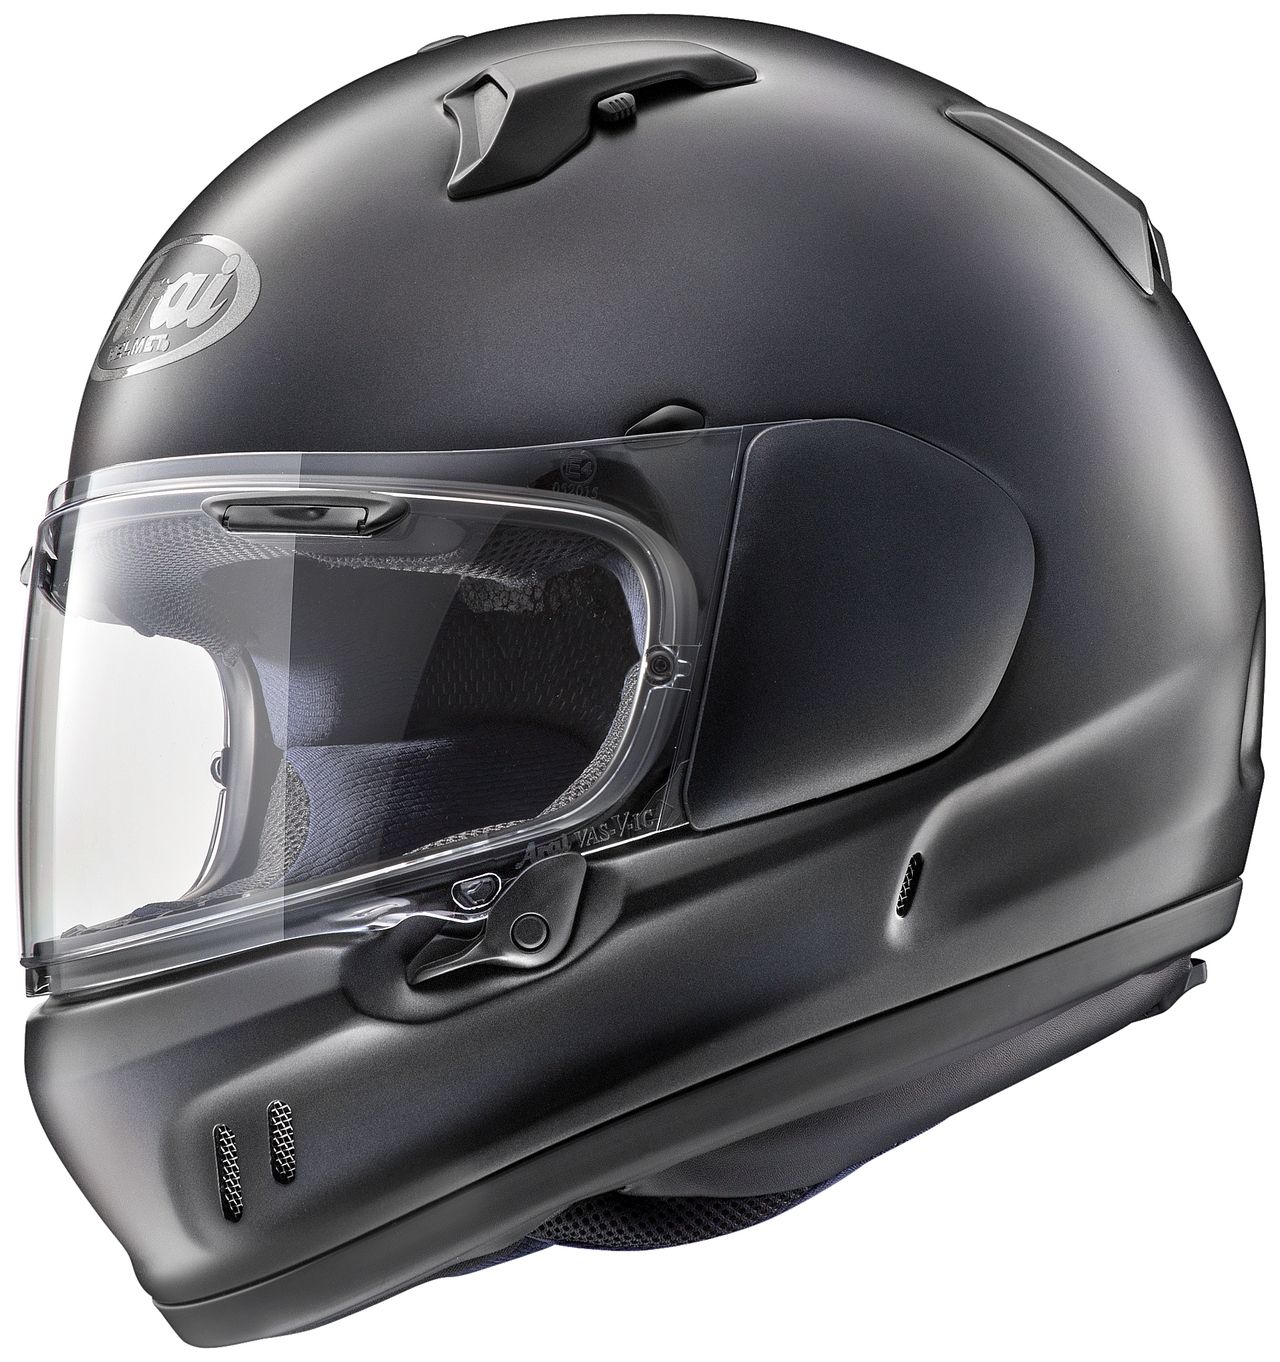 Webike Arai アライ Xd エックスディー フラットブラック ヘルメット W 49 P フルフェイスヘルメット 通販